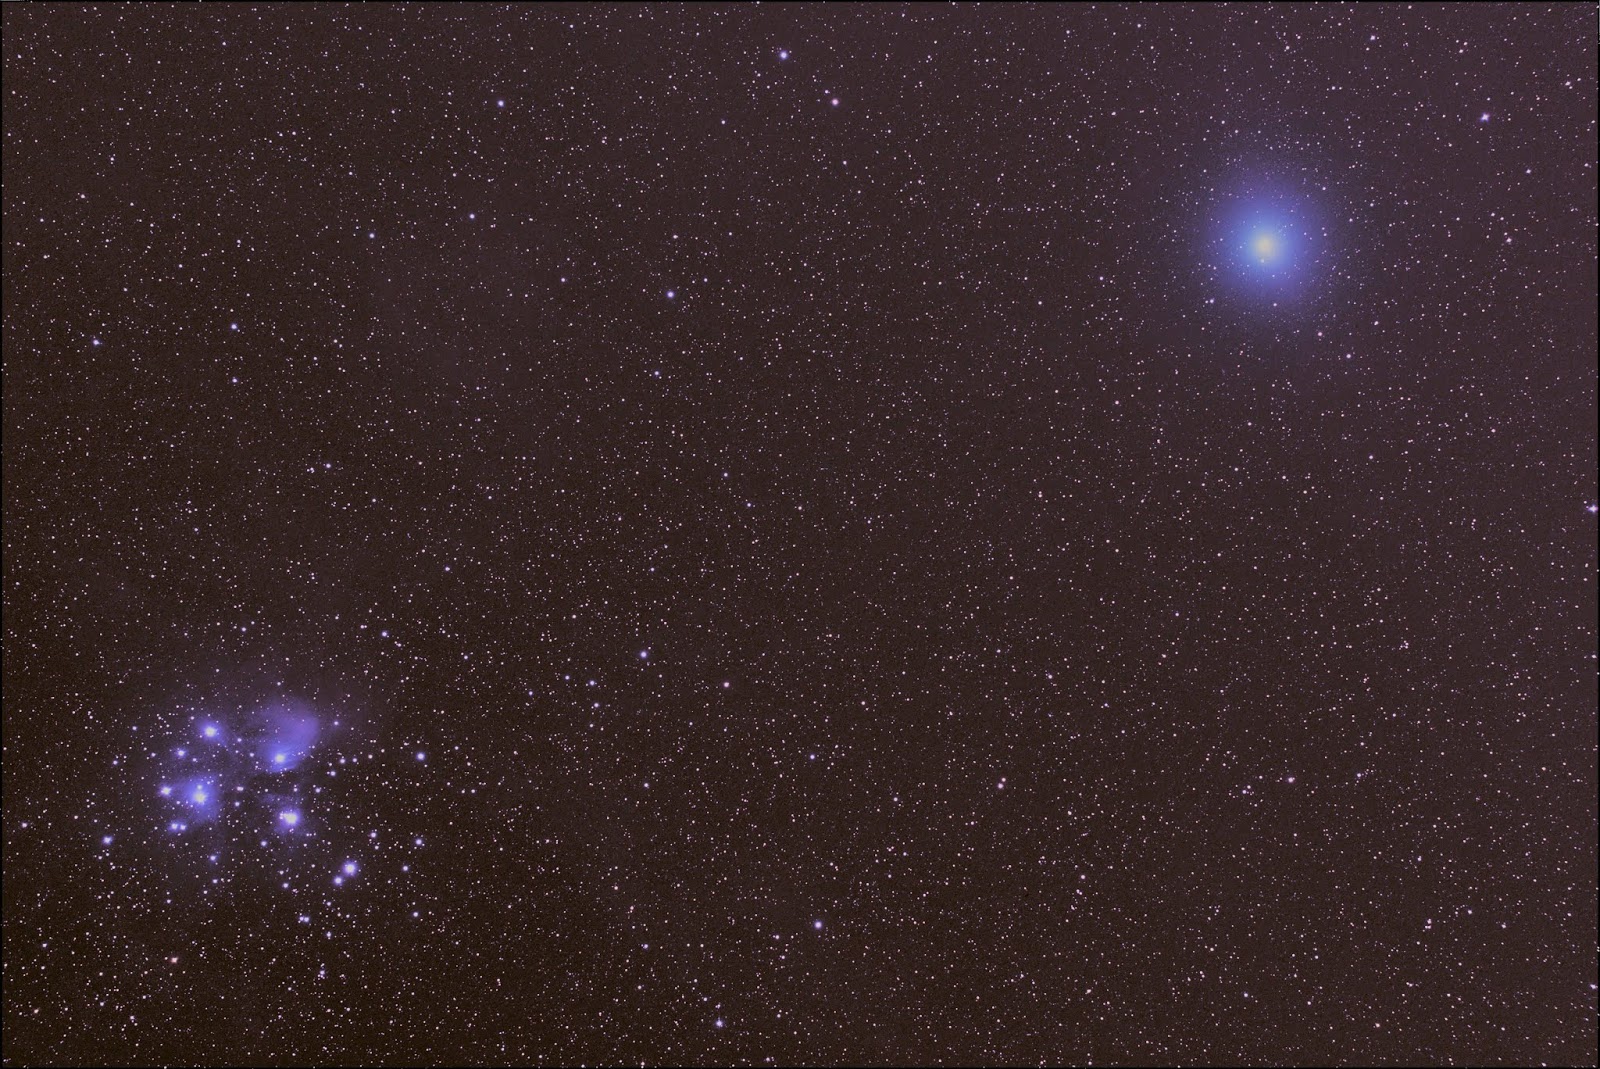 古川天文趣味工房 ウィルタネン彗星 46p とすばる星団 M45 の接近 12月15日